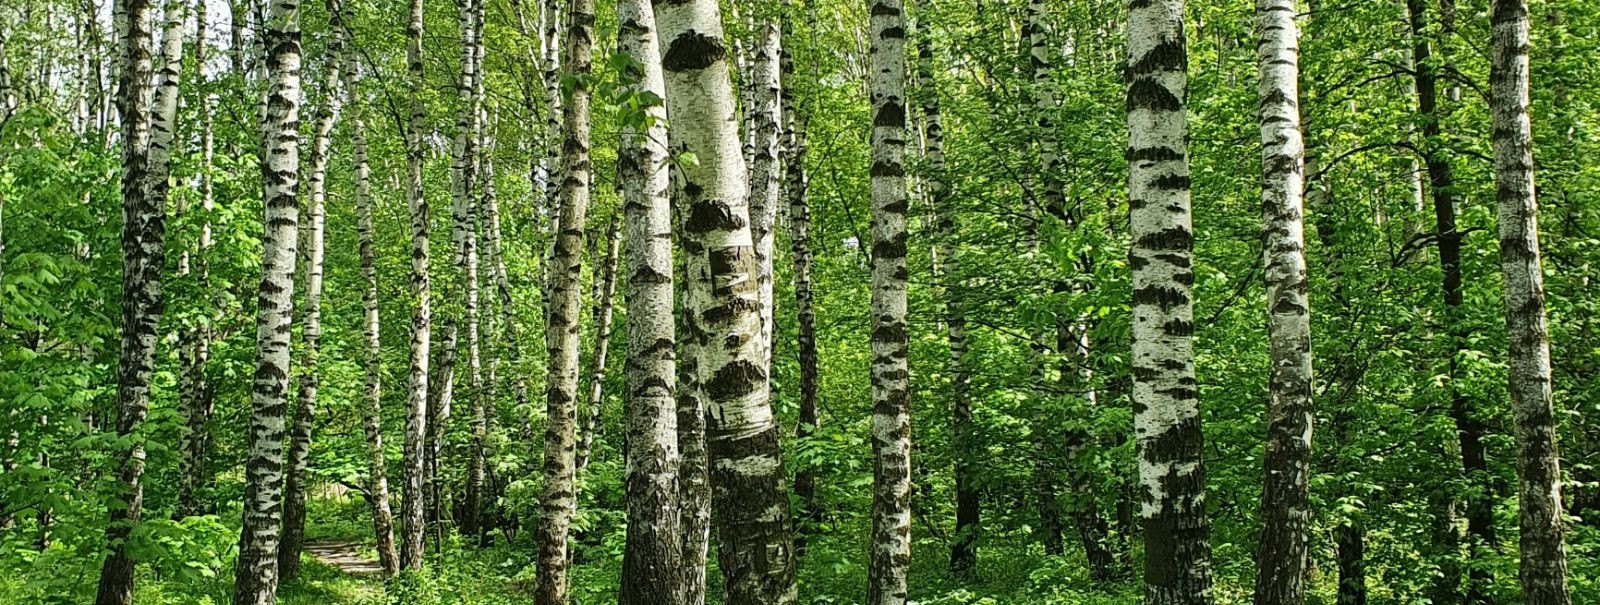 Metsamajandus on kriitilise tähtsusega metsamaa tervise ja tootlikkuse säilitamisel. Jätkusuutlikud praktikad tagavad, et metsad jätkavad oluliste ressursside j